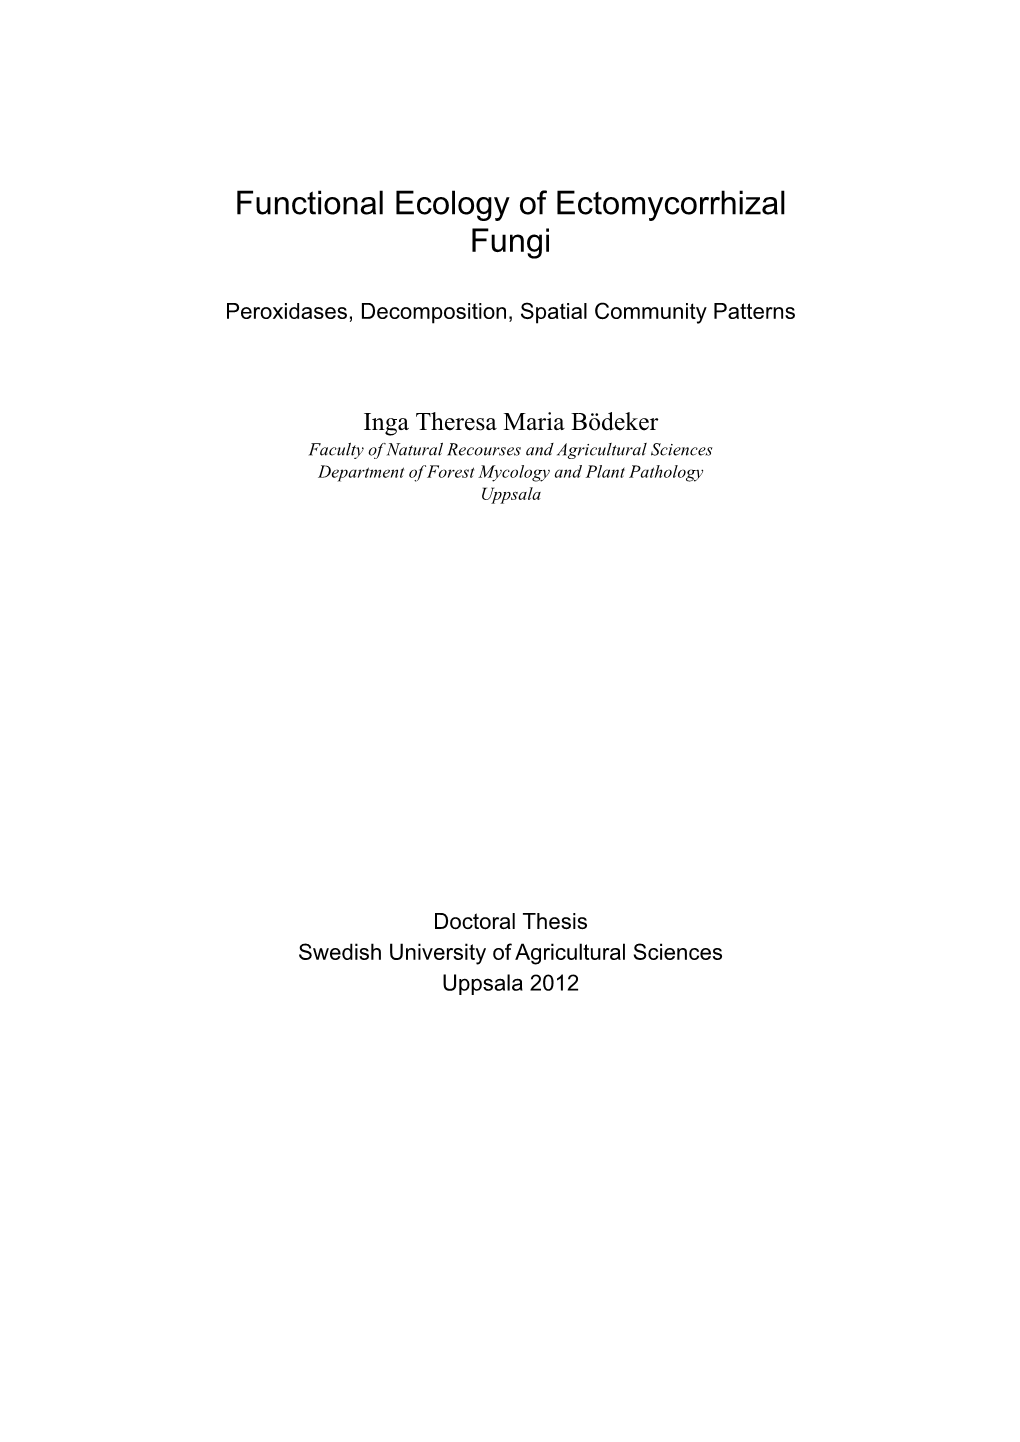 Functional Ecology of Ectomycorrhizal Fungi